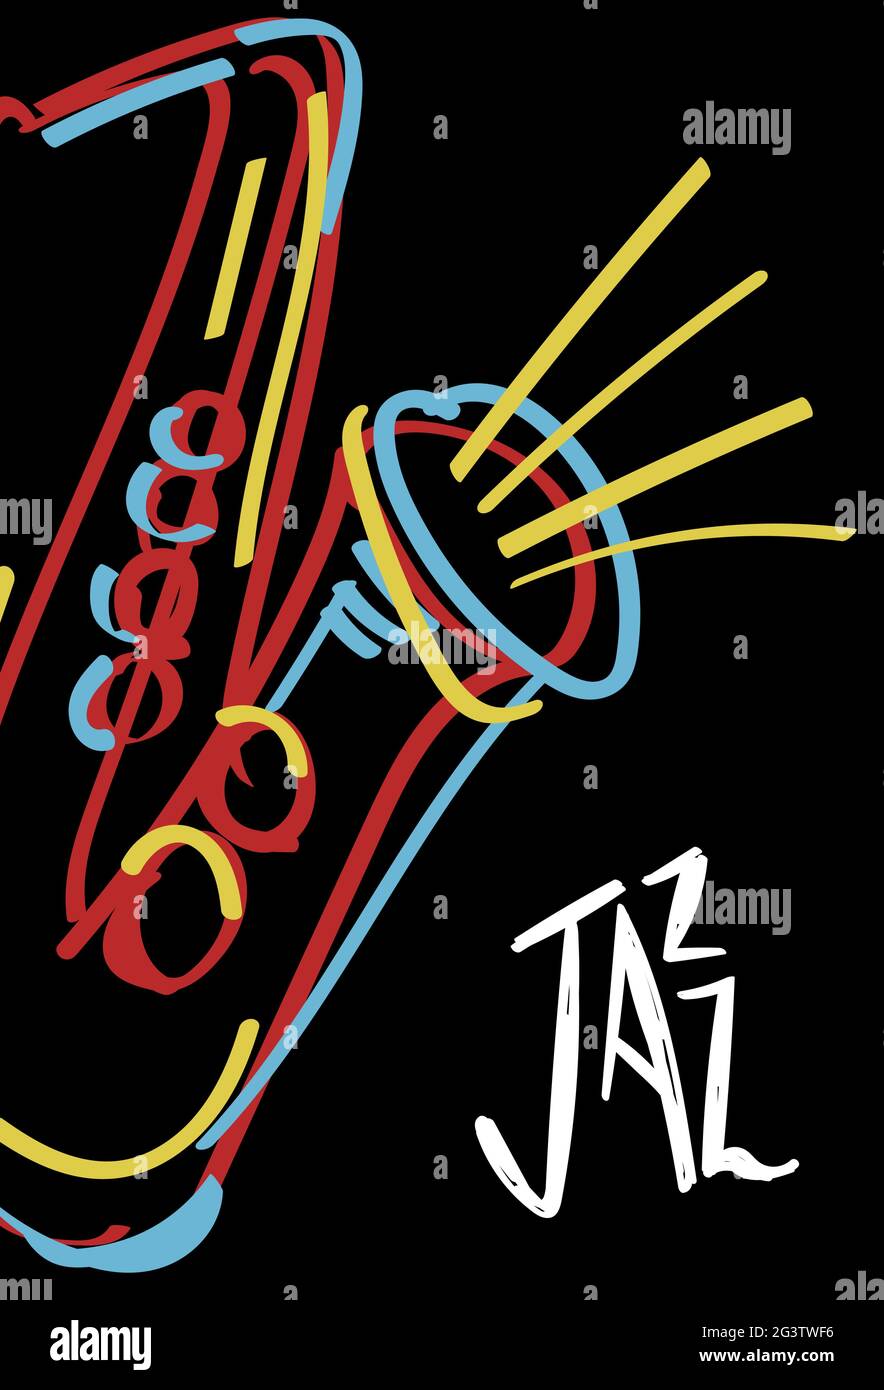 Affiche de musique jazz illustration de l'instrument saxophone abstrait coloré Doodle dessiné à la main. Modèle de concert musical pour boîte de nuit ou festival Illustration de Vecteur